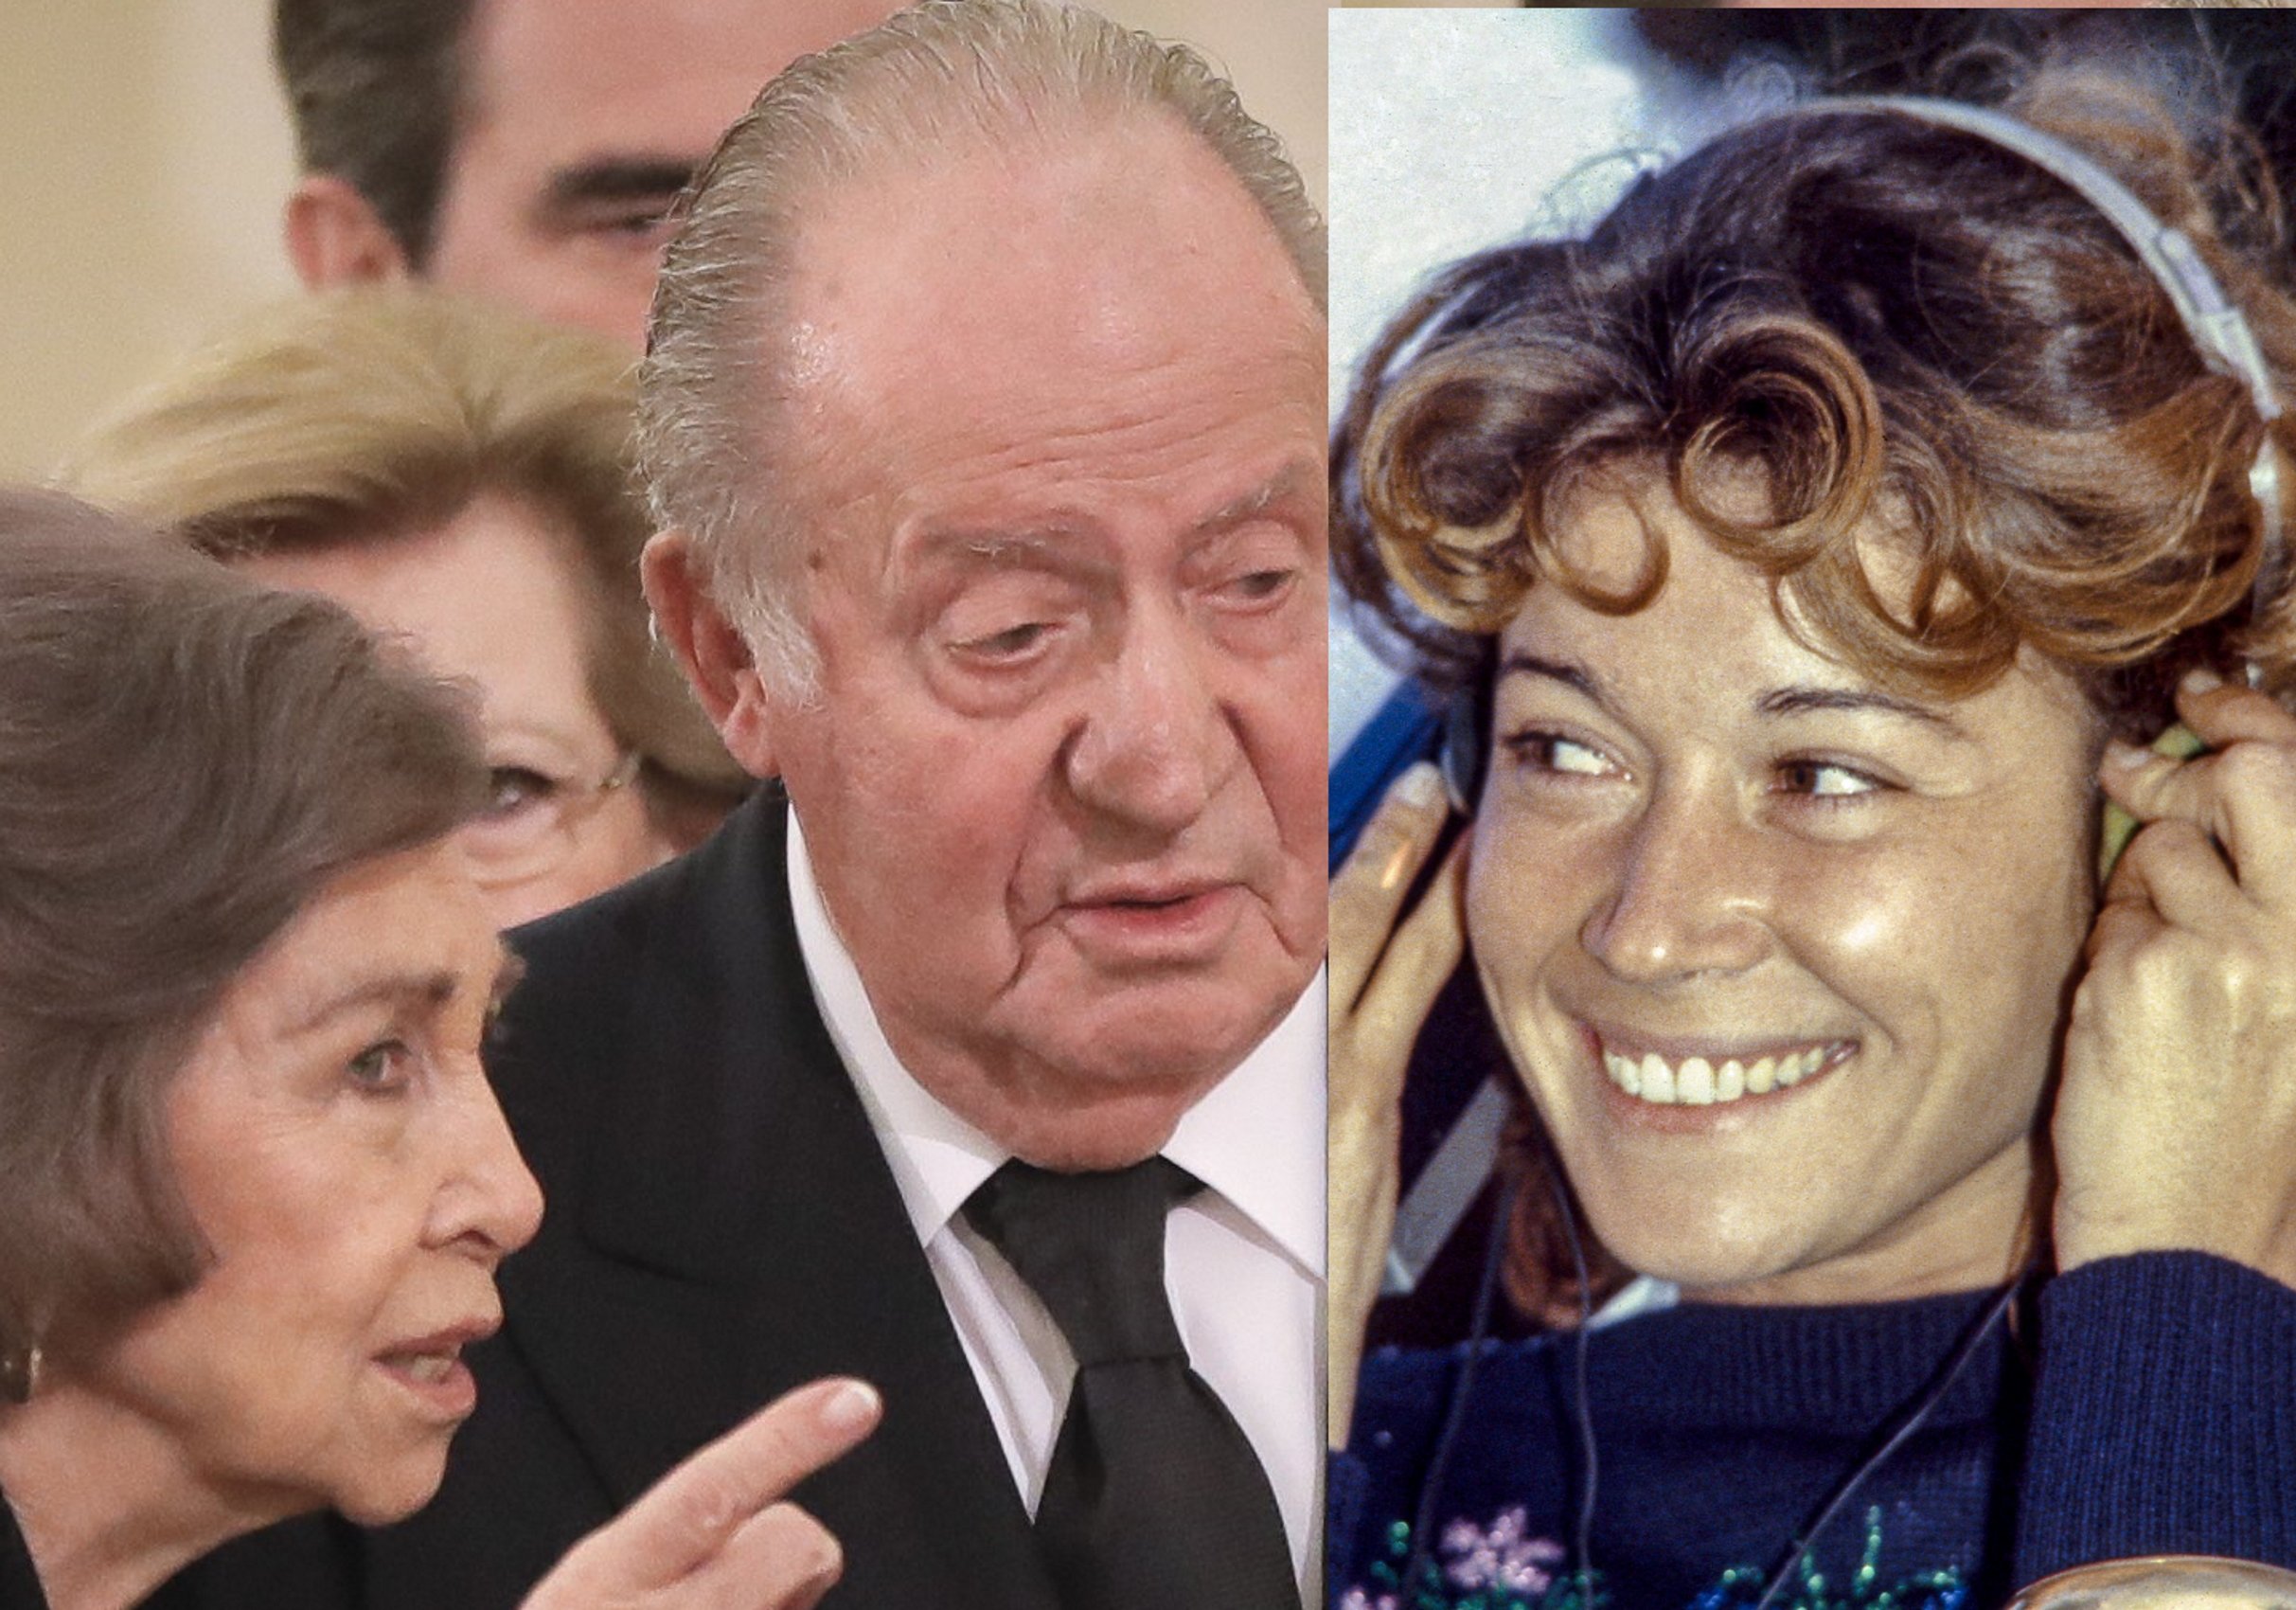 Joan Carles i el seu lleig a Sofía quan apareixia Mila Ximénez: "Lo pasaremos bien"